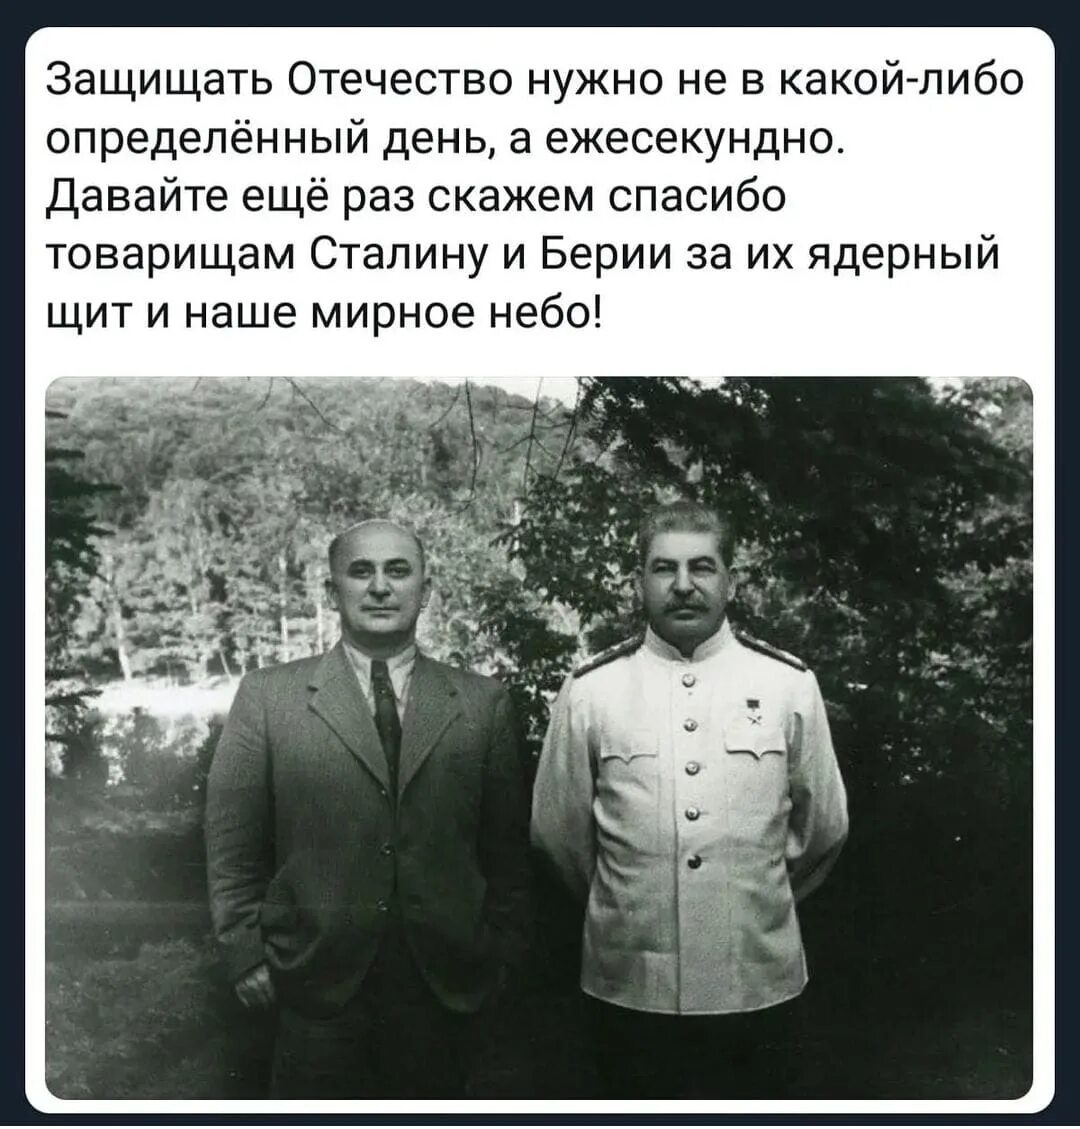 Сталин и берия анекдот. Сталин и Берия. Сталин русский грузинского происхождения. Сталин я русский человек грузинской национальности. Сталинский ядерный щит.